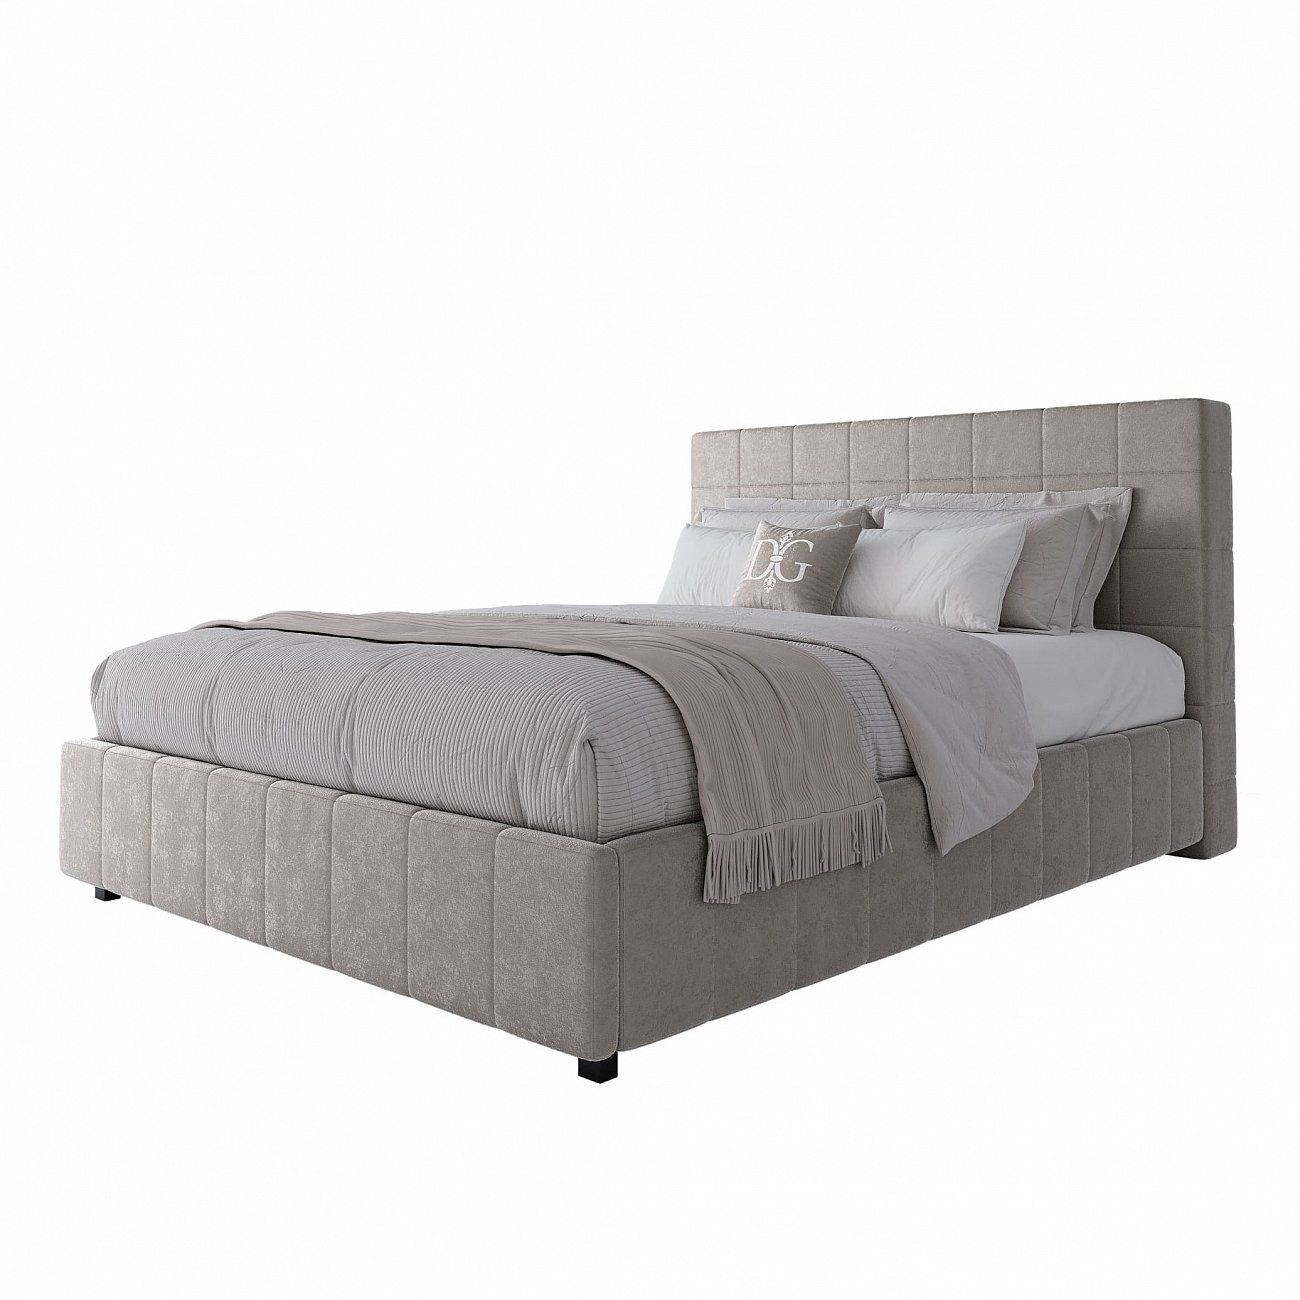 Shining Modern double bed 160x200 cm light beige